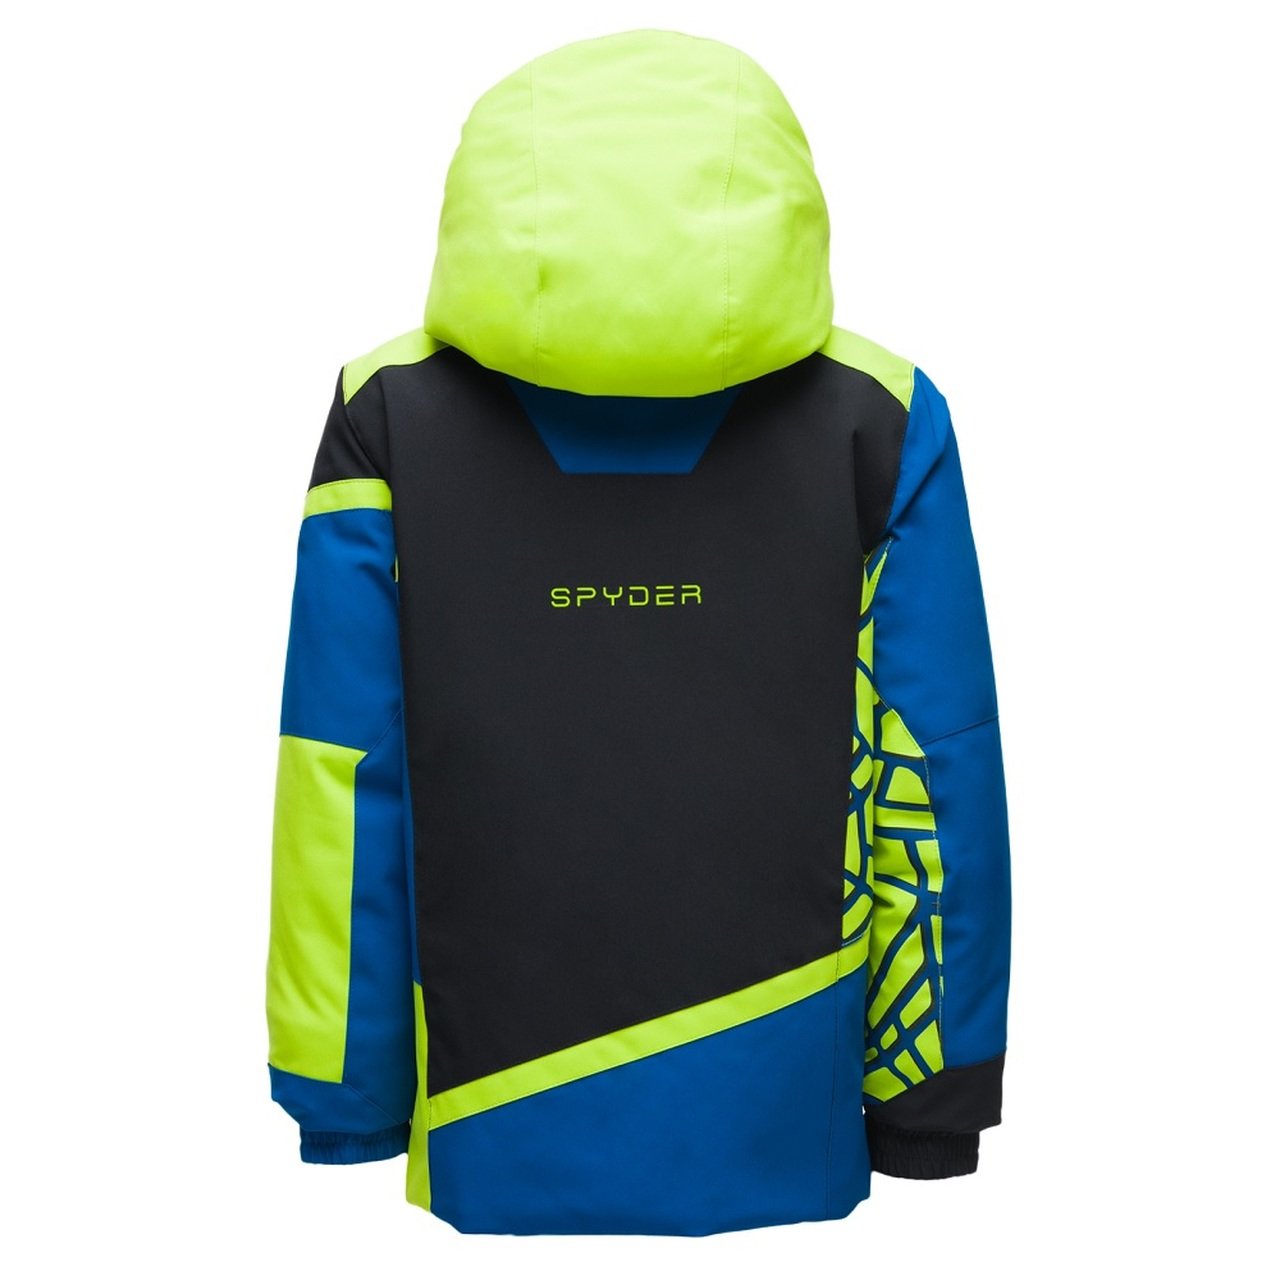 Spyder Challenger Boys Mini Jacket 2020